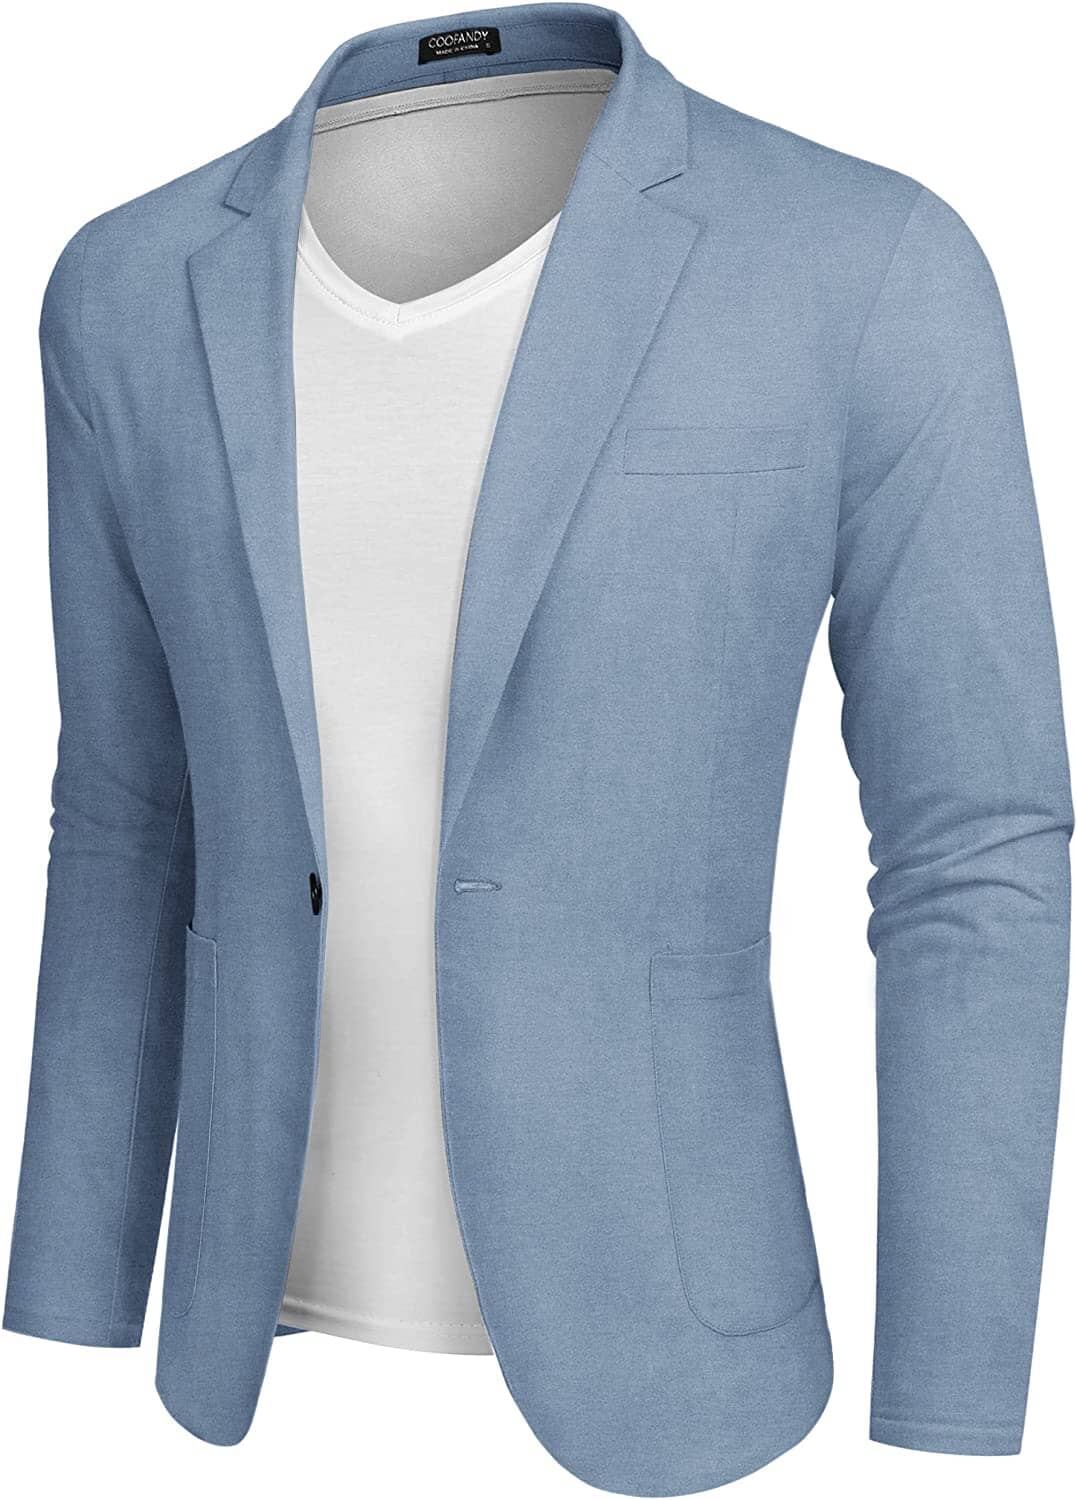 Casual Regular Fit Lightweight Linen Blazer (US Only) Blazer COOFANDY Store Light Blue S 